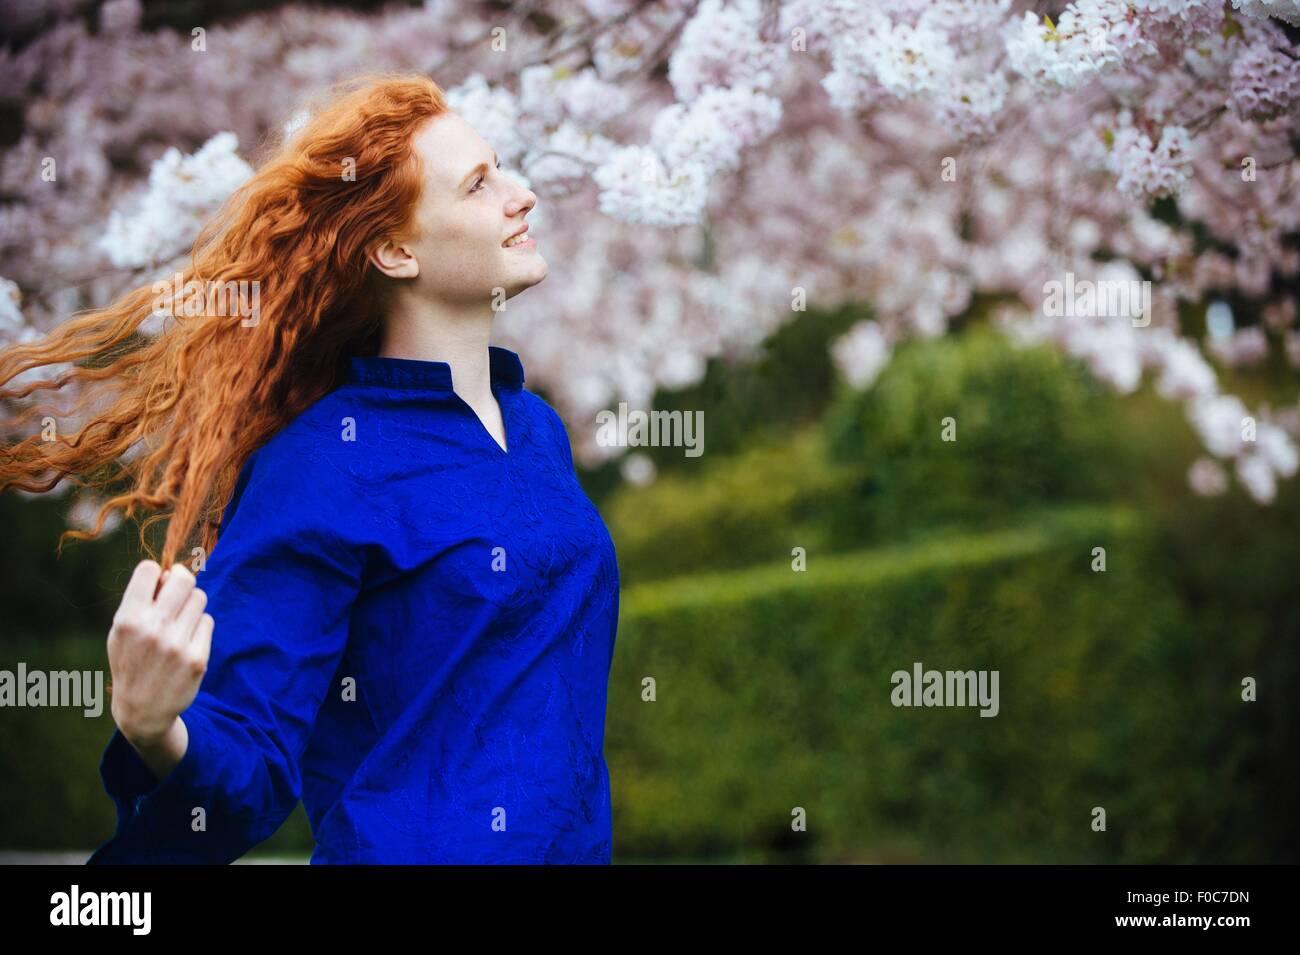 Portrait de jeune femme avec de longs cheveux roux ondulés dans spring park Banque D'Images